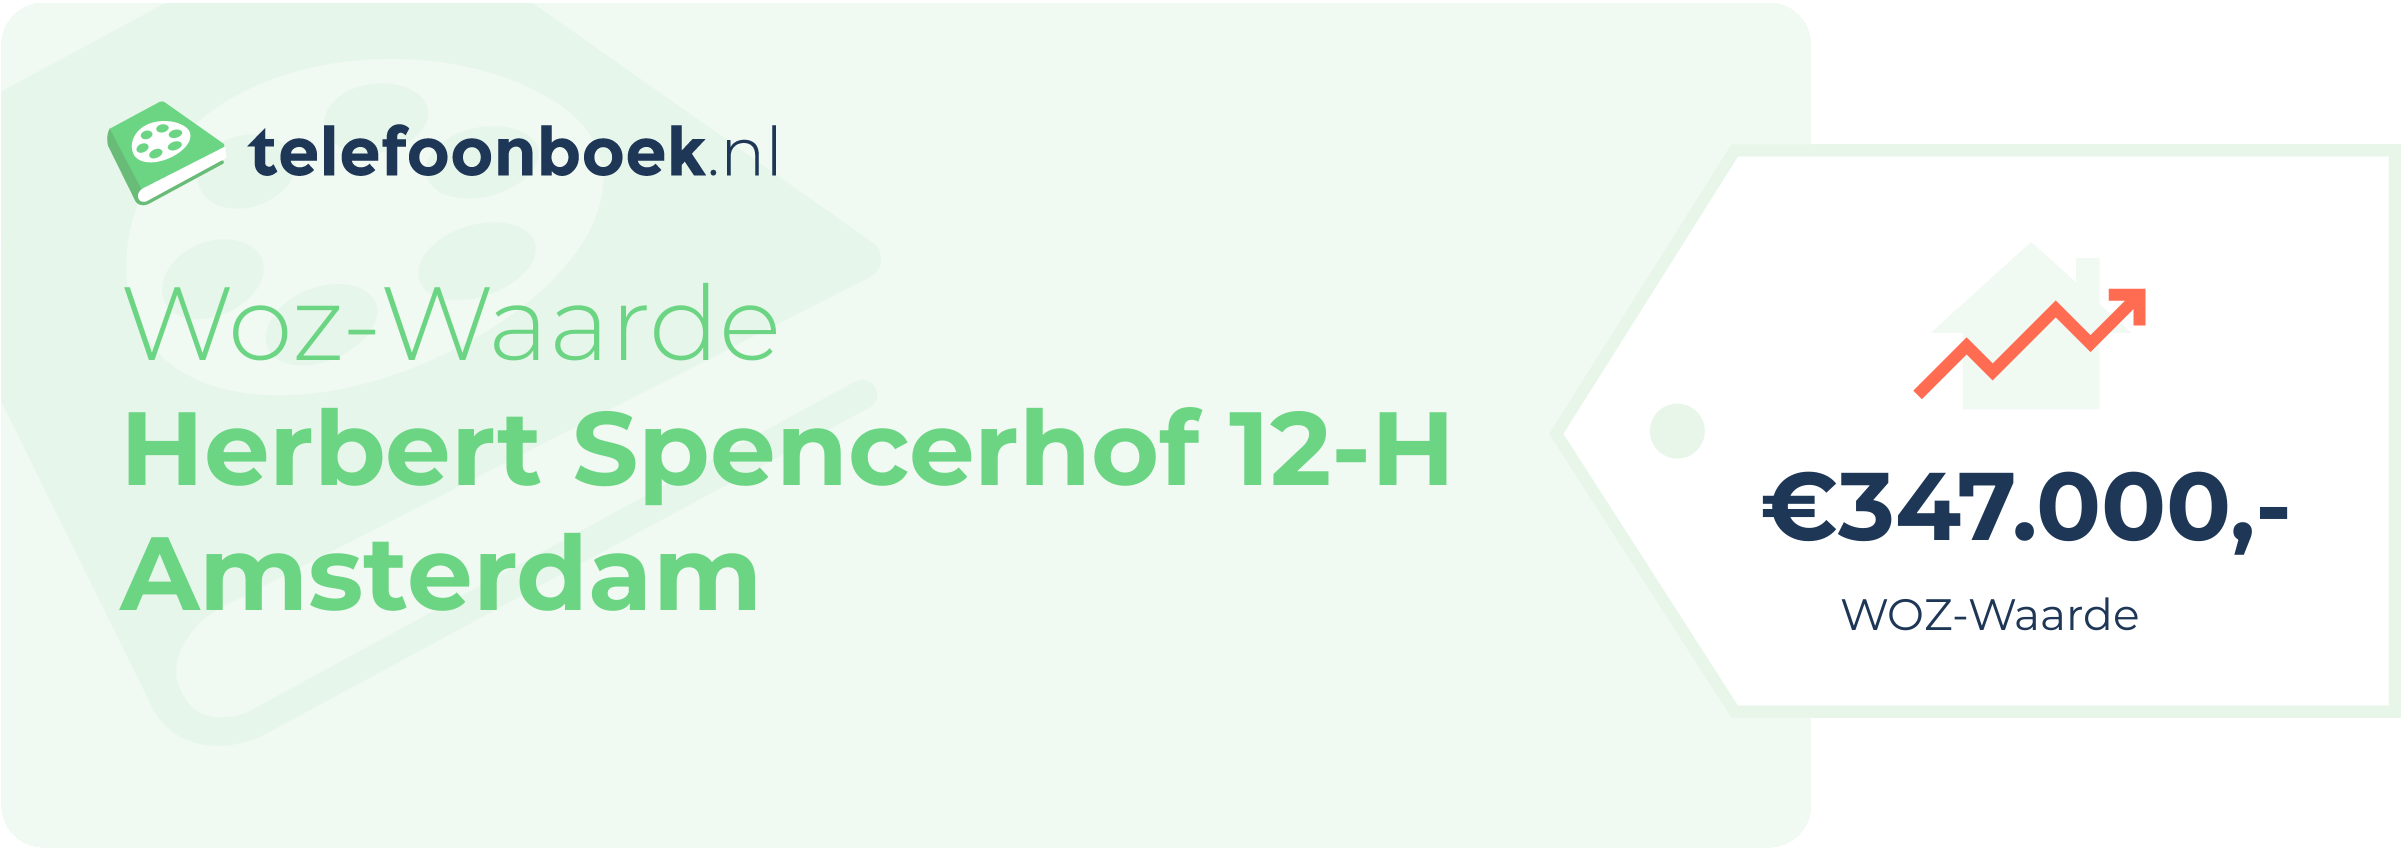 WOZ-waarde Herbert Spencerhof 12-H Amsterdam